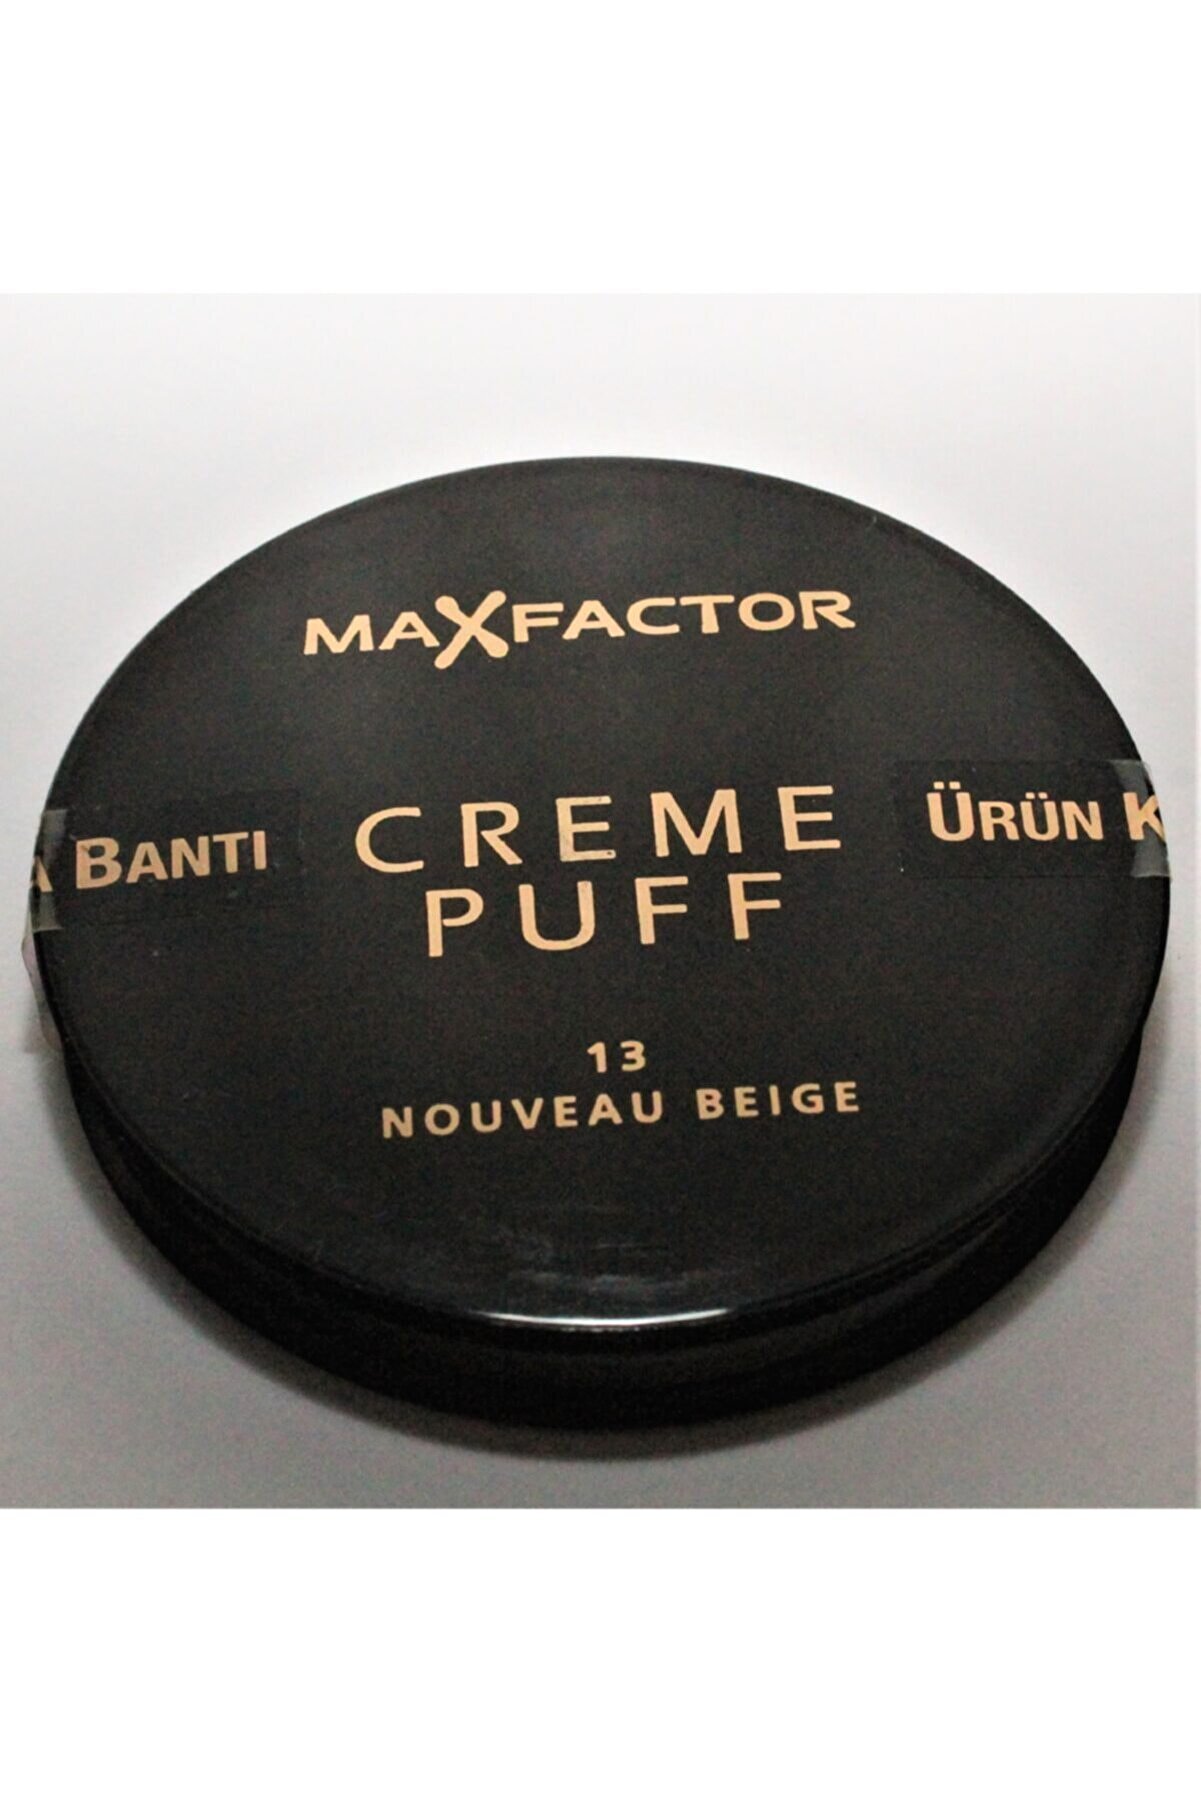 Max Factor Creme Puff Pudra 13 Nouveau Beige